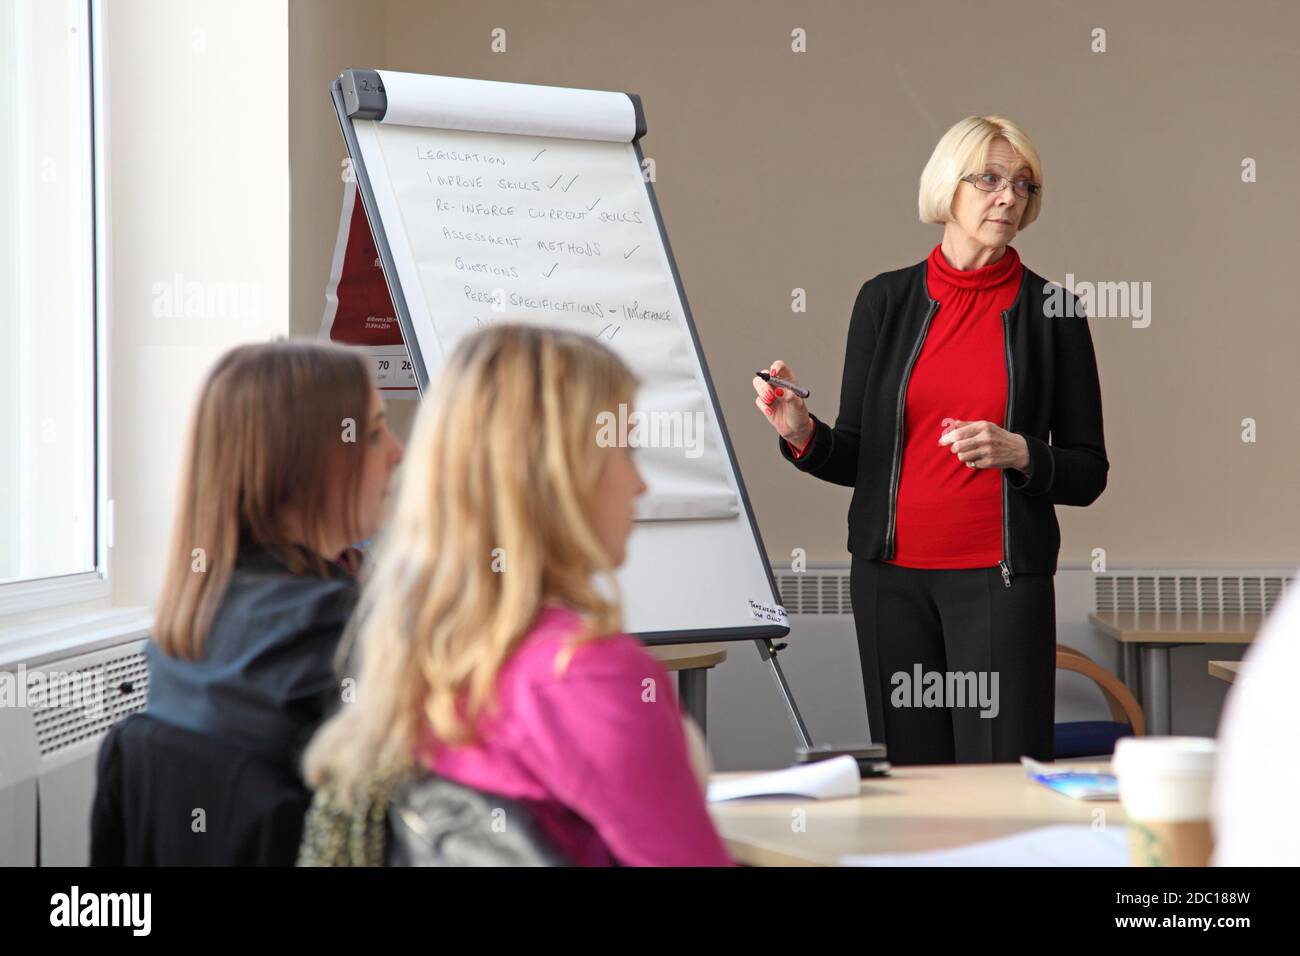 Une femme d'âge moyen mène une discussion de gestion - écrivant sur un tableau de conférence. Deux jeunes femmes s'assoient à un bureau au premier plan. Banque D'Images